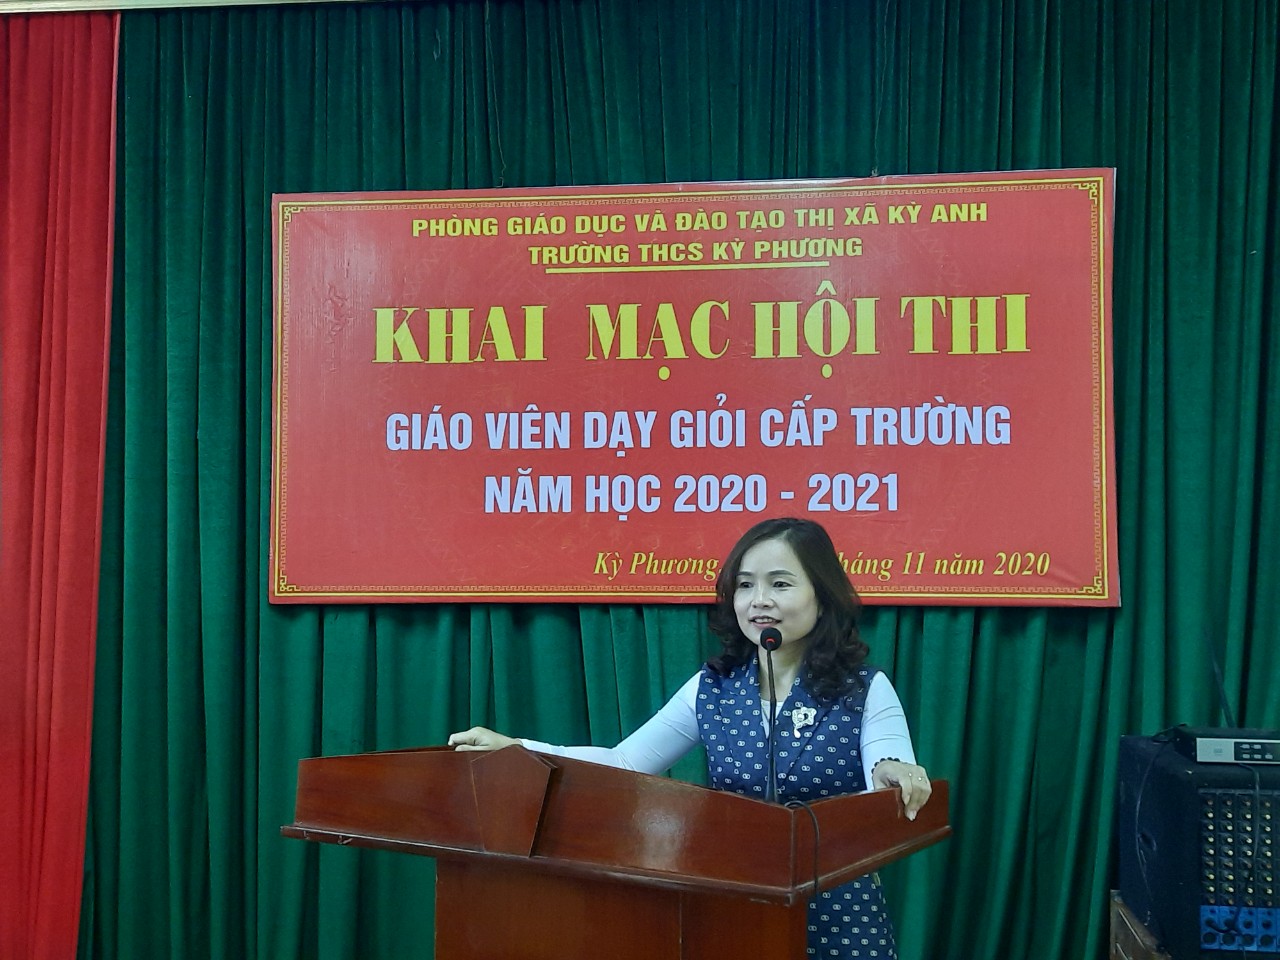 Cô giáo Vũ Thị Mai Hương - Chuyên viên phòng GD&ĐT thị xã phát biểu tại buổi lễ khai mạc